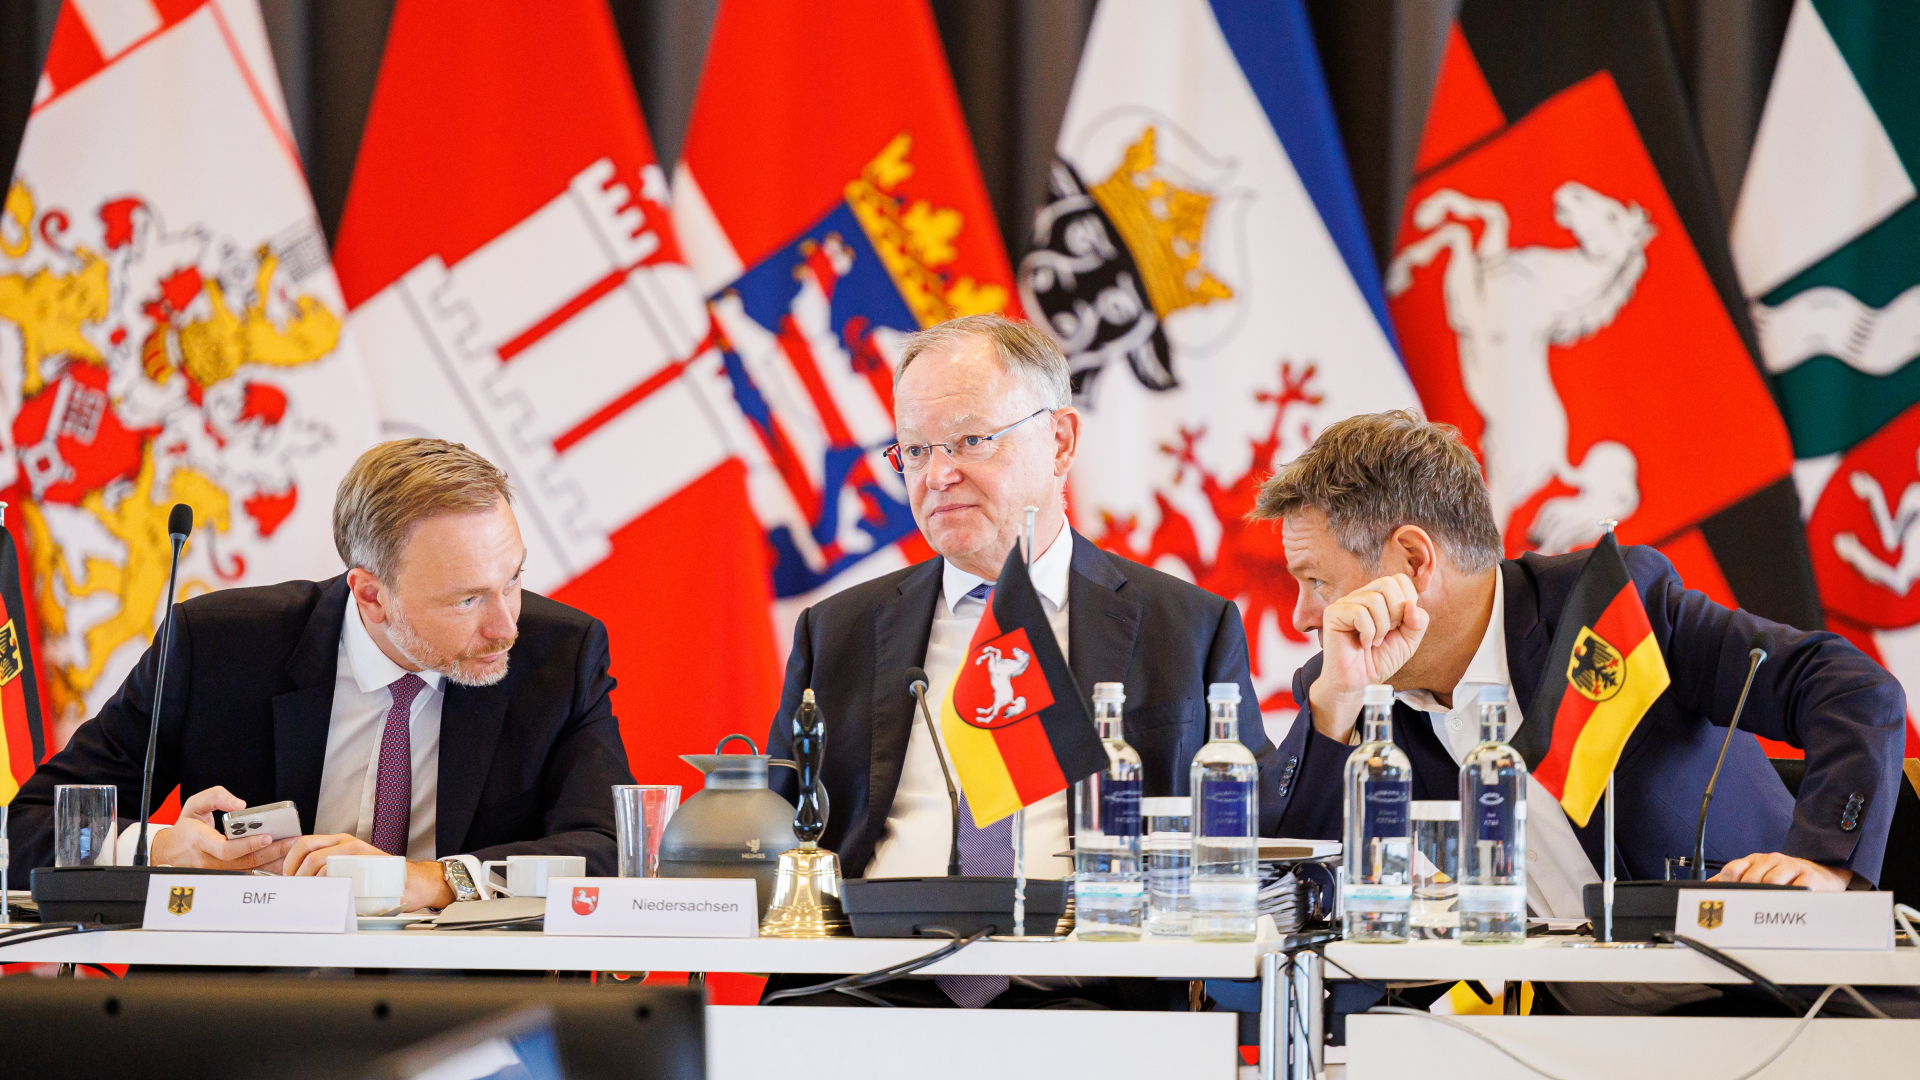 Christian Lindner, Stephan Weil und Robert Habeck sitzen bei der Ministerpräsidentenkonferenz vor Flaggen der Bundesländer | dpa